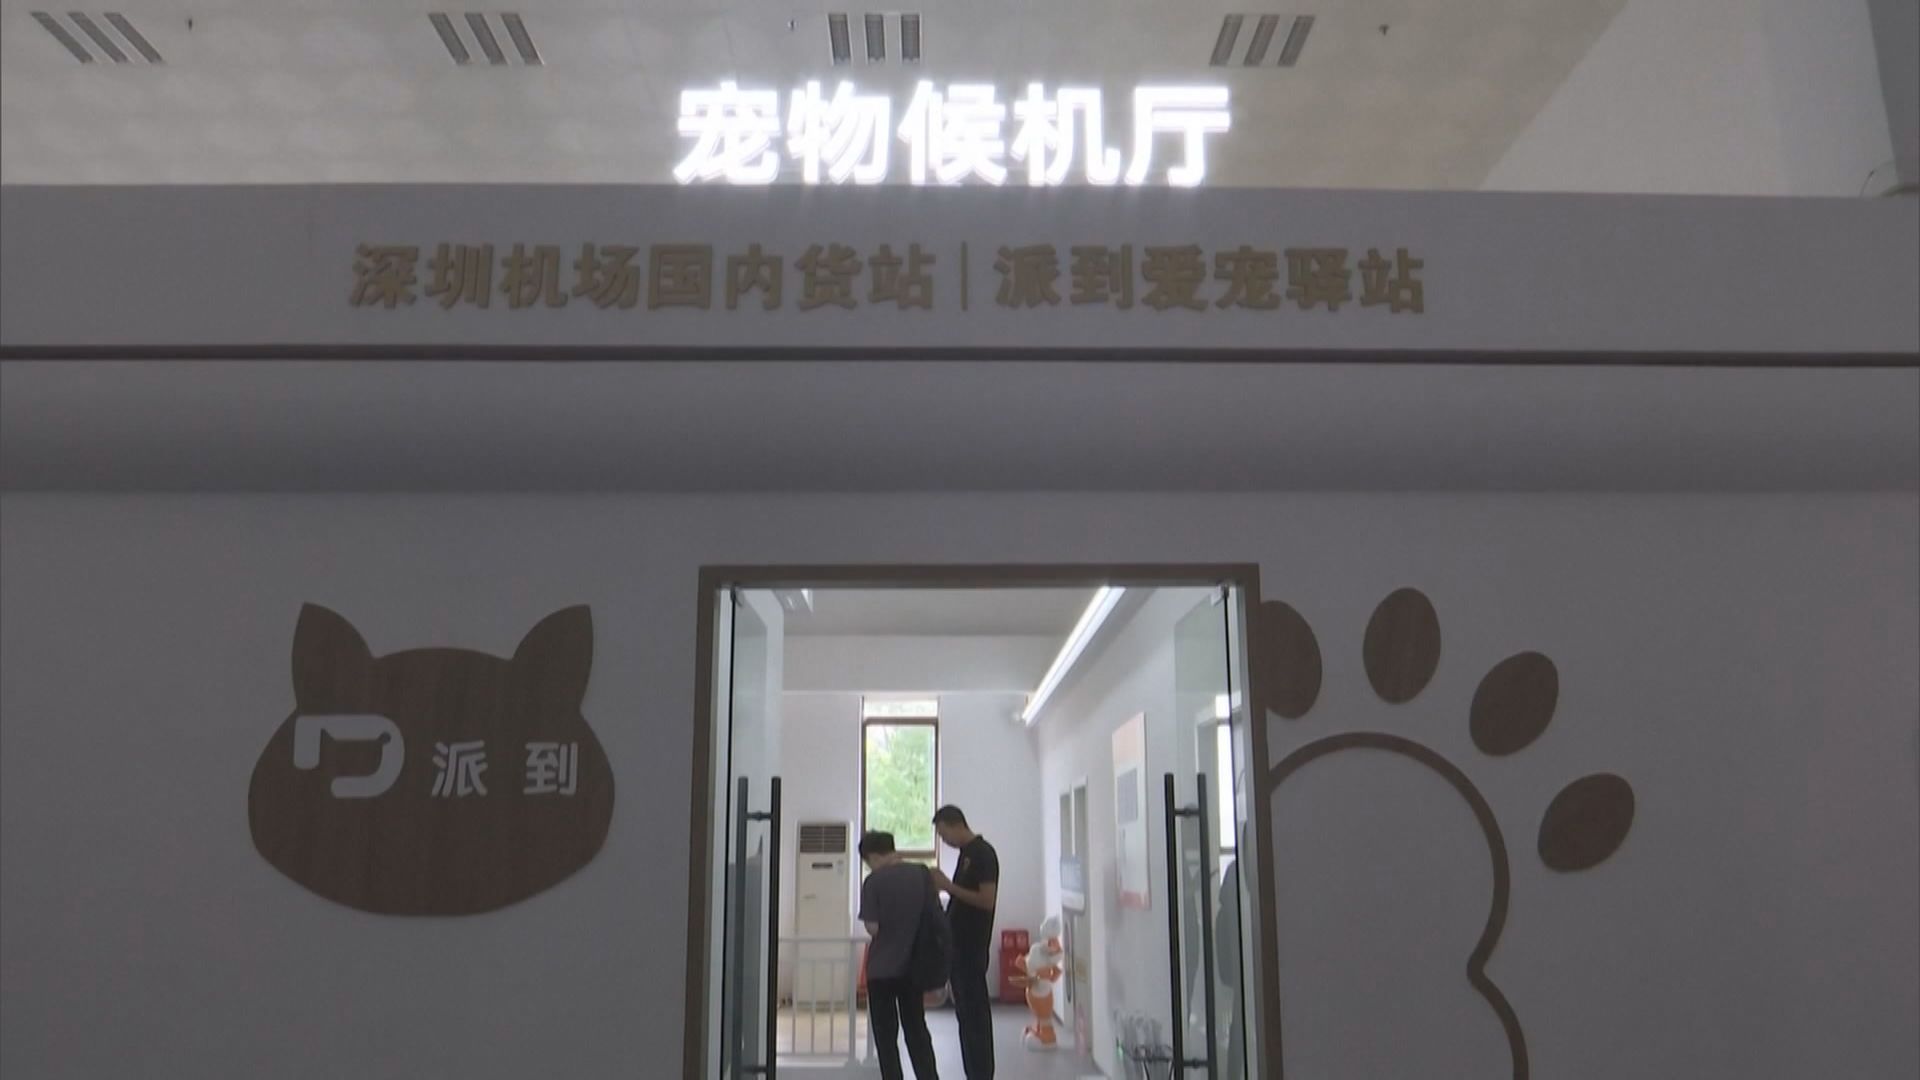 【寵物出行】深圳機場設寵物候機廳 高鐵考慮允小動物上車